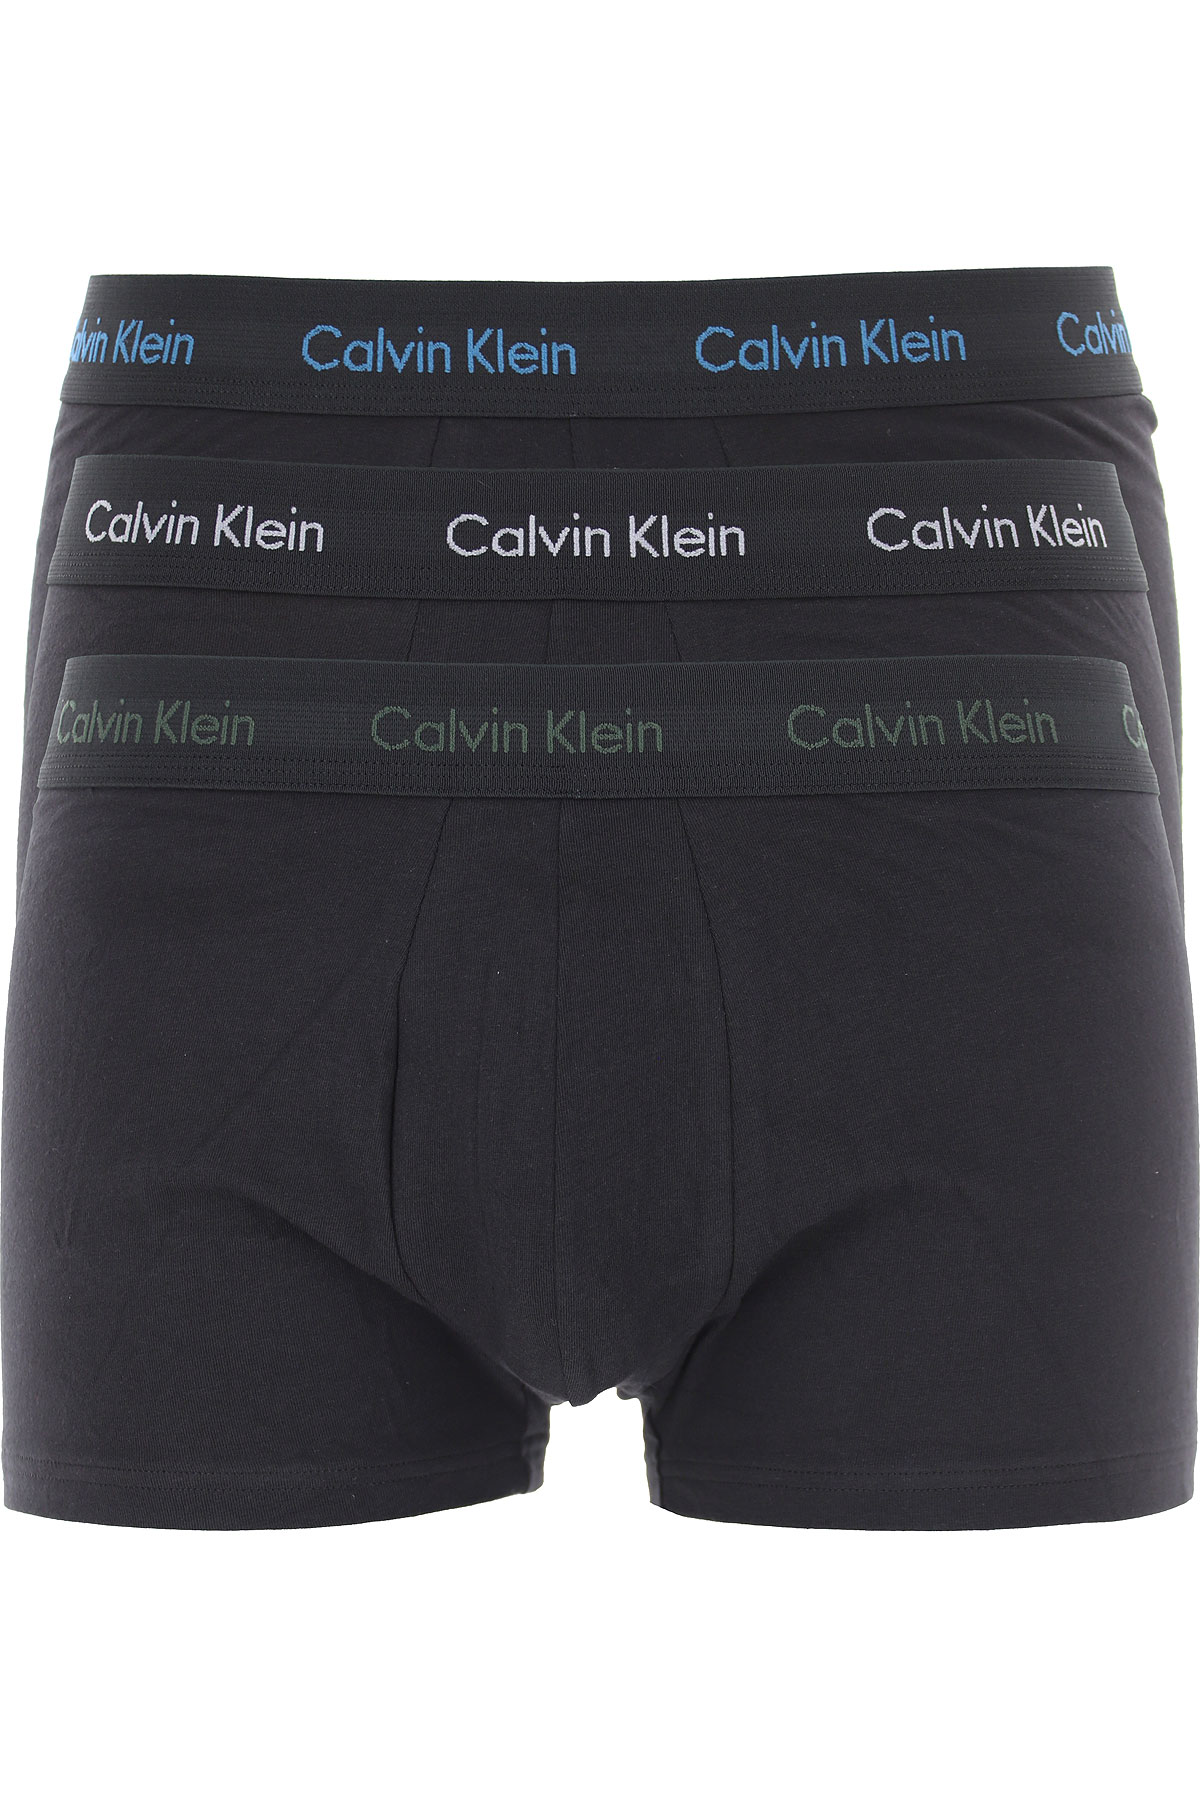 Mens Underwear Calvin Klein, Style code: 0000u2664g-1tt-